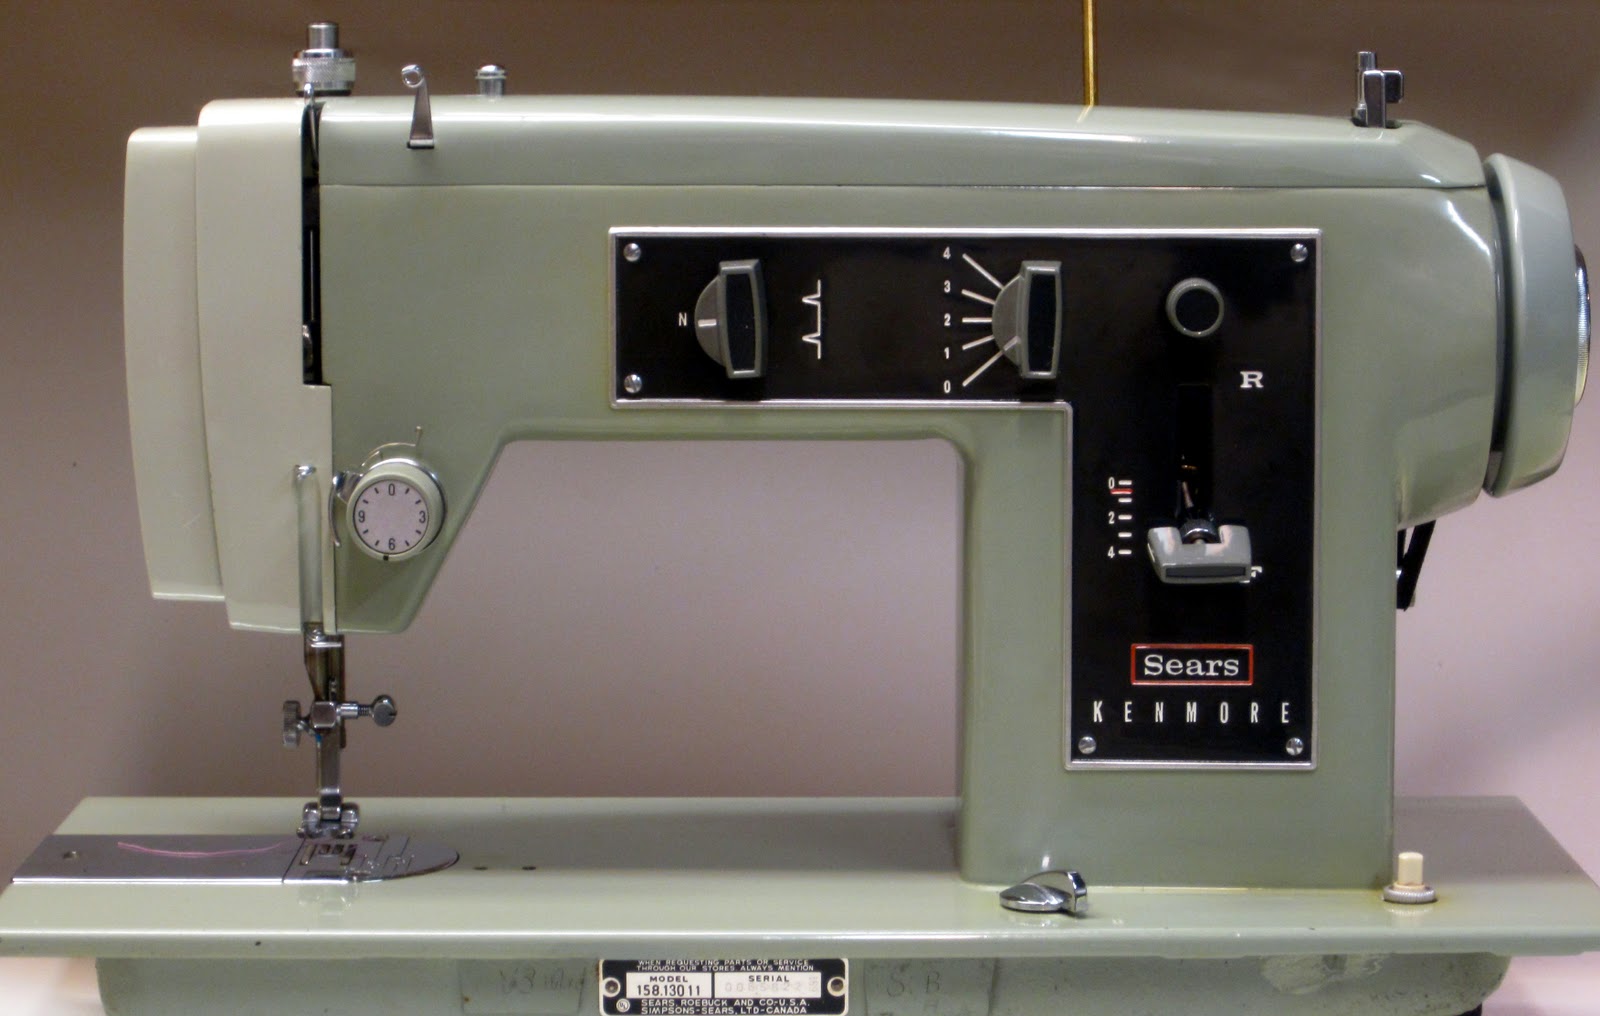 MI Vintage Sewing Machines: Kenmore 158.13011 (1969)